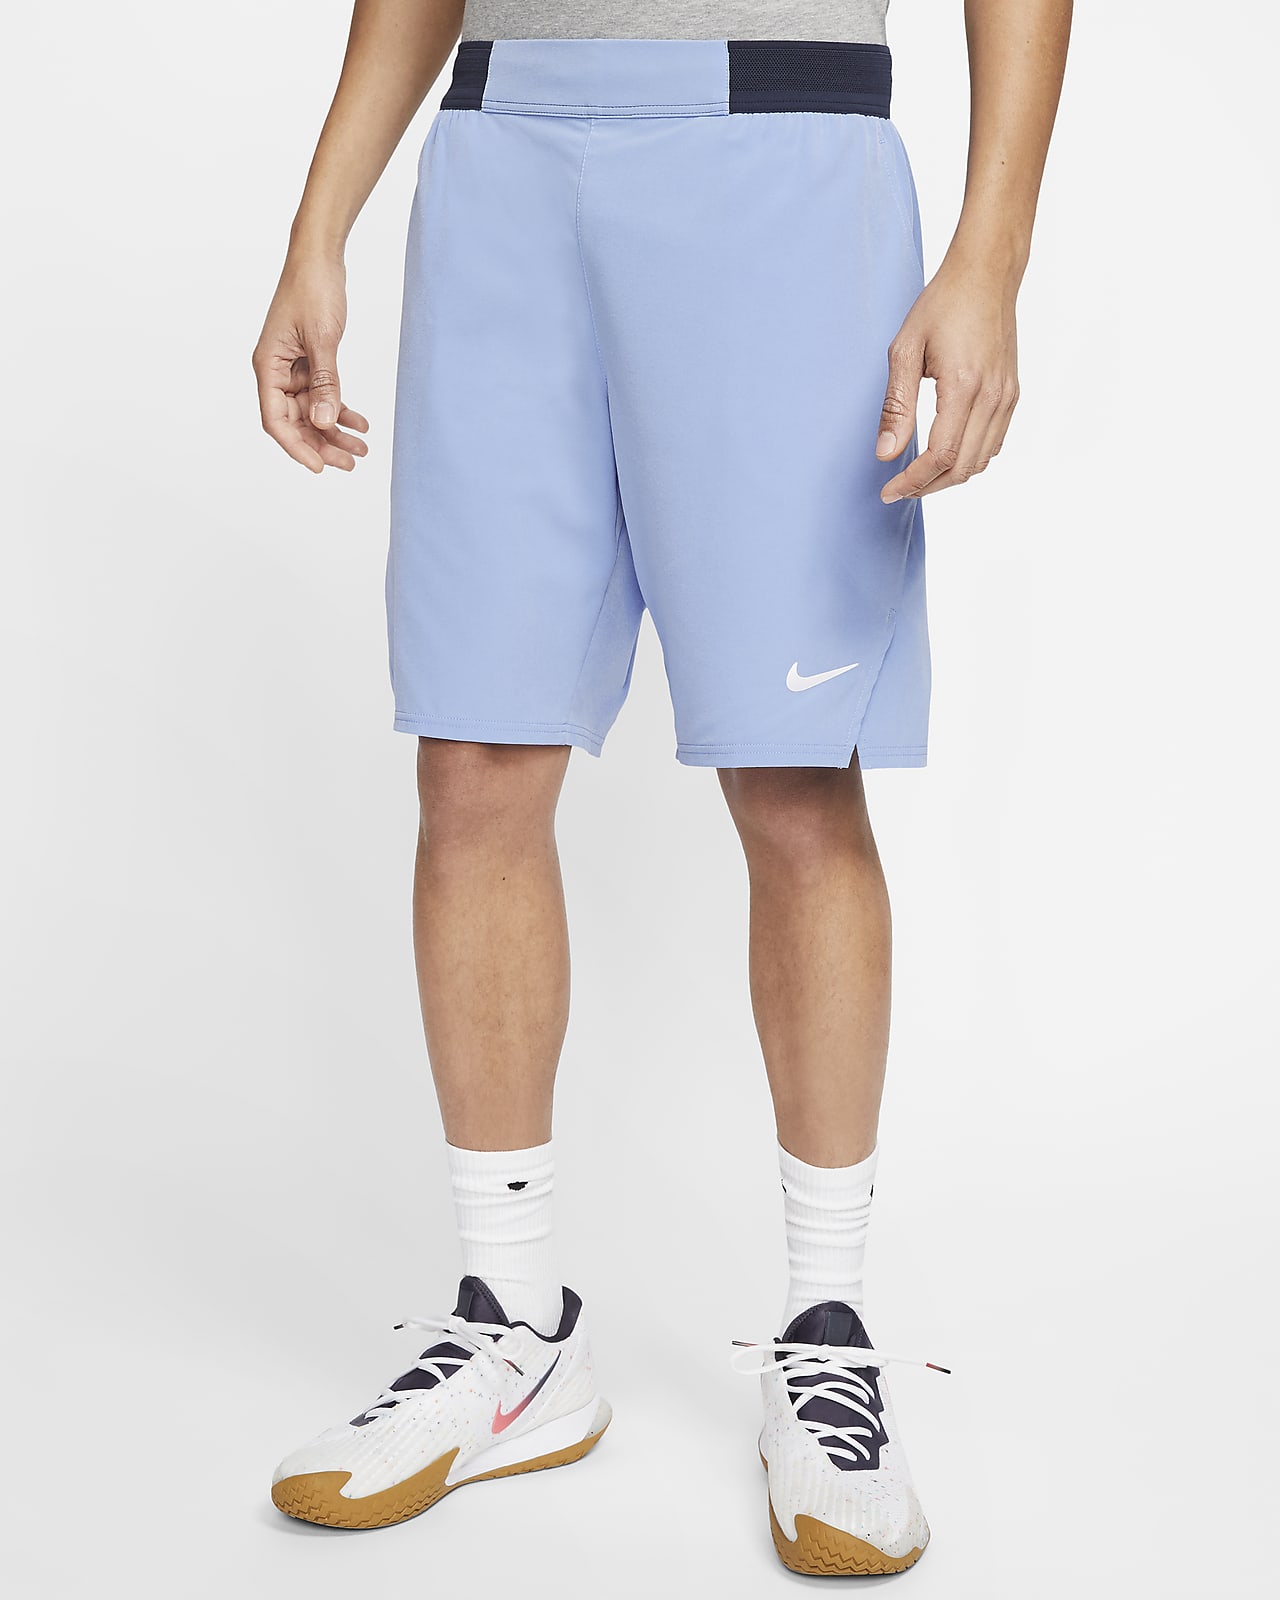 Shorts de tenis de 23 cm para hombre NikeCourt Flex Ace. Nike.com